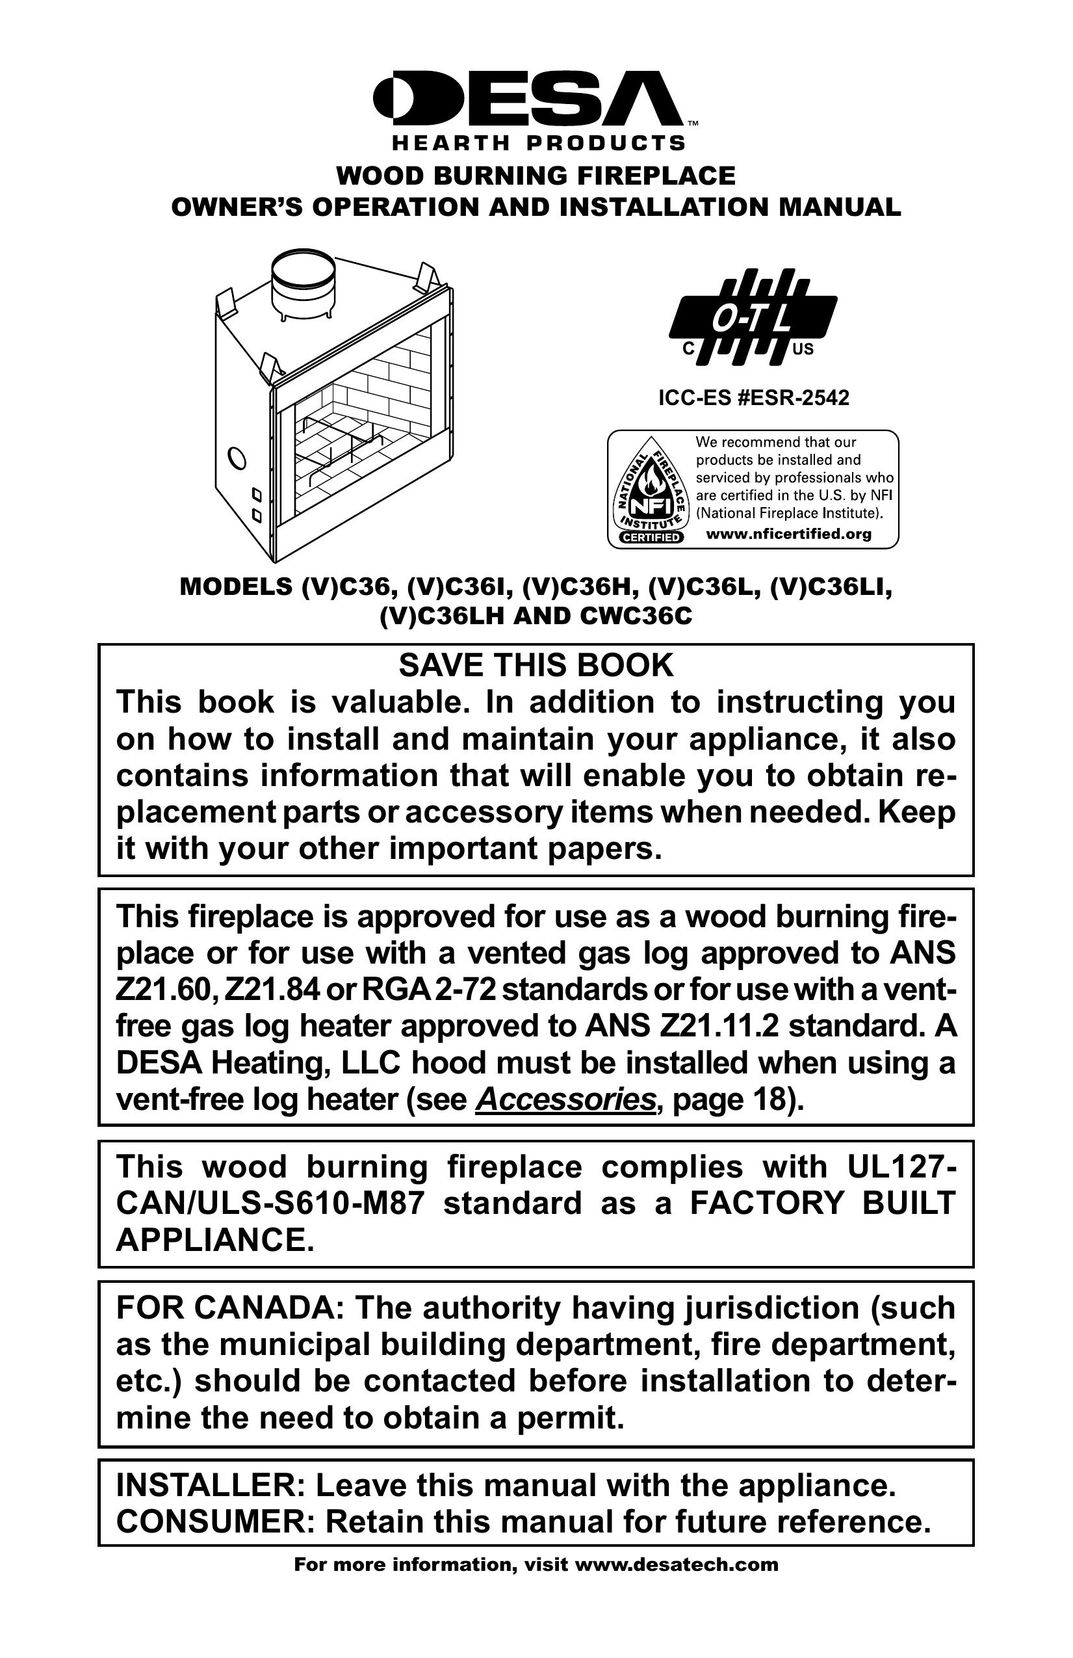 Desa (V)C36LH Indoor Fireplace User Manual